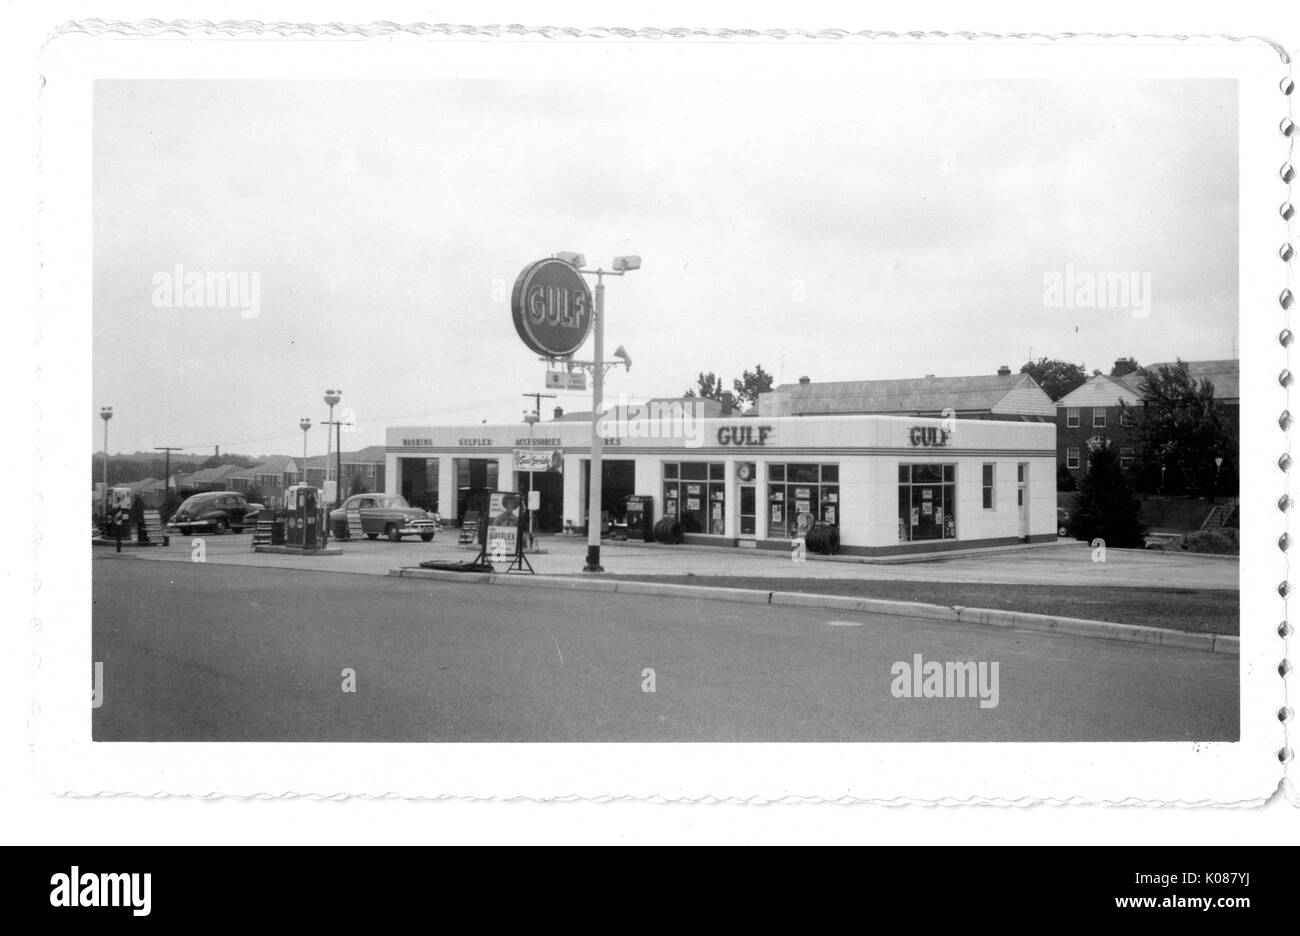 Blick über die Straße der Gulf Tankstelle, Golf ist auf dem Gebäude der Werbung sowie auf ein großes Schild Treiber anzuziehen, die Tankstelle ist in hellen Farben gestrichen und zwei Automobile erhalten Service, Baltimore, Maryland, 1951. Stockfoto